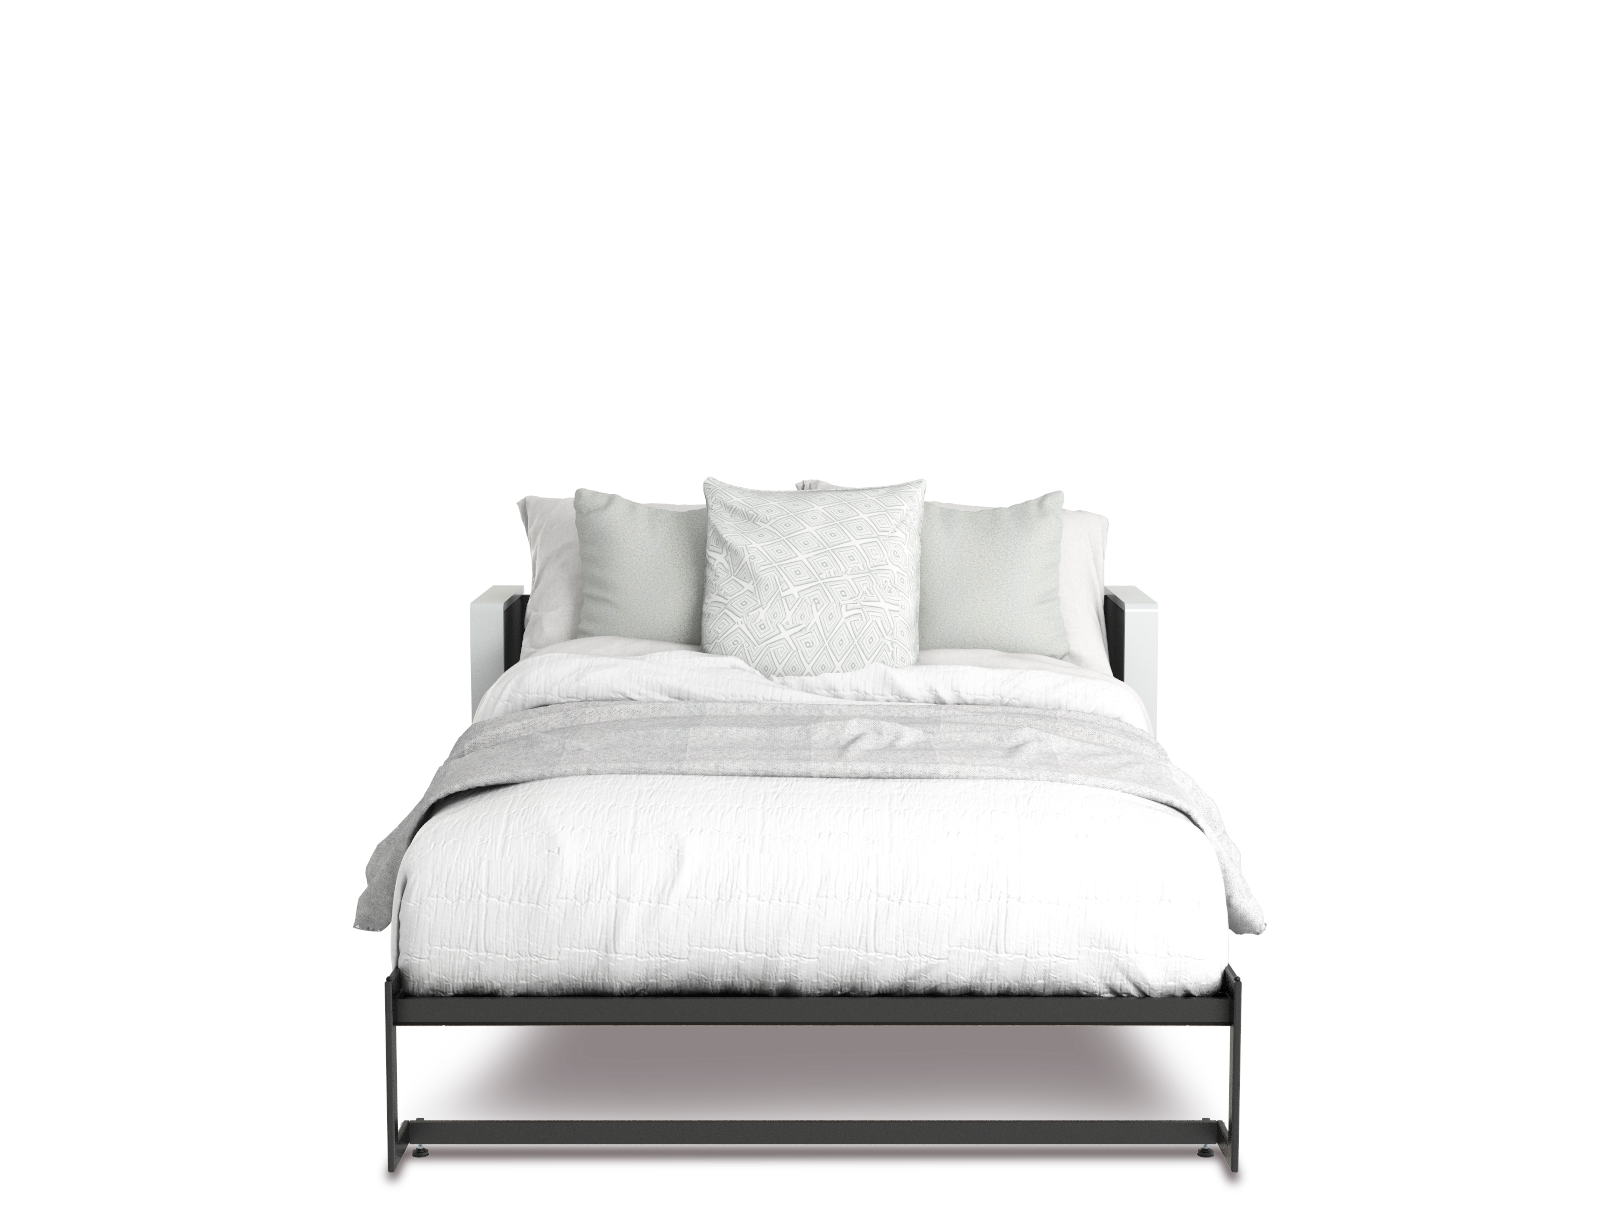 Esentelle base de cama matrimonial con laminado de madera color tzalam // MS